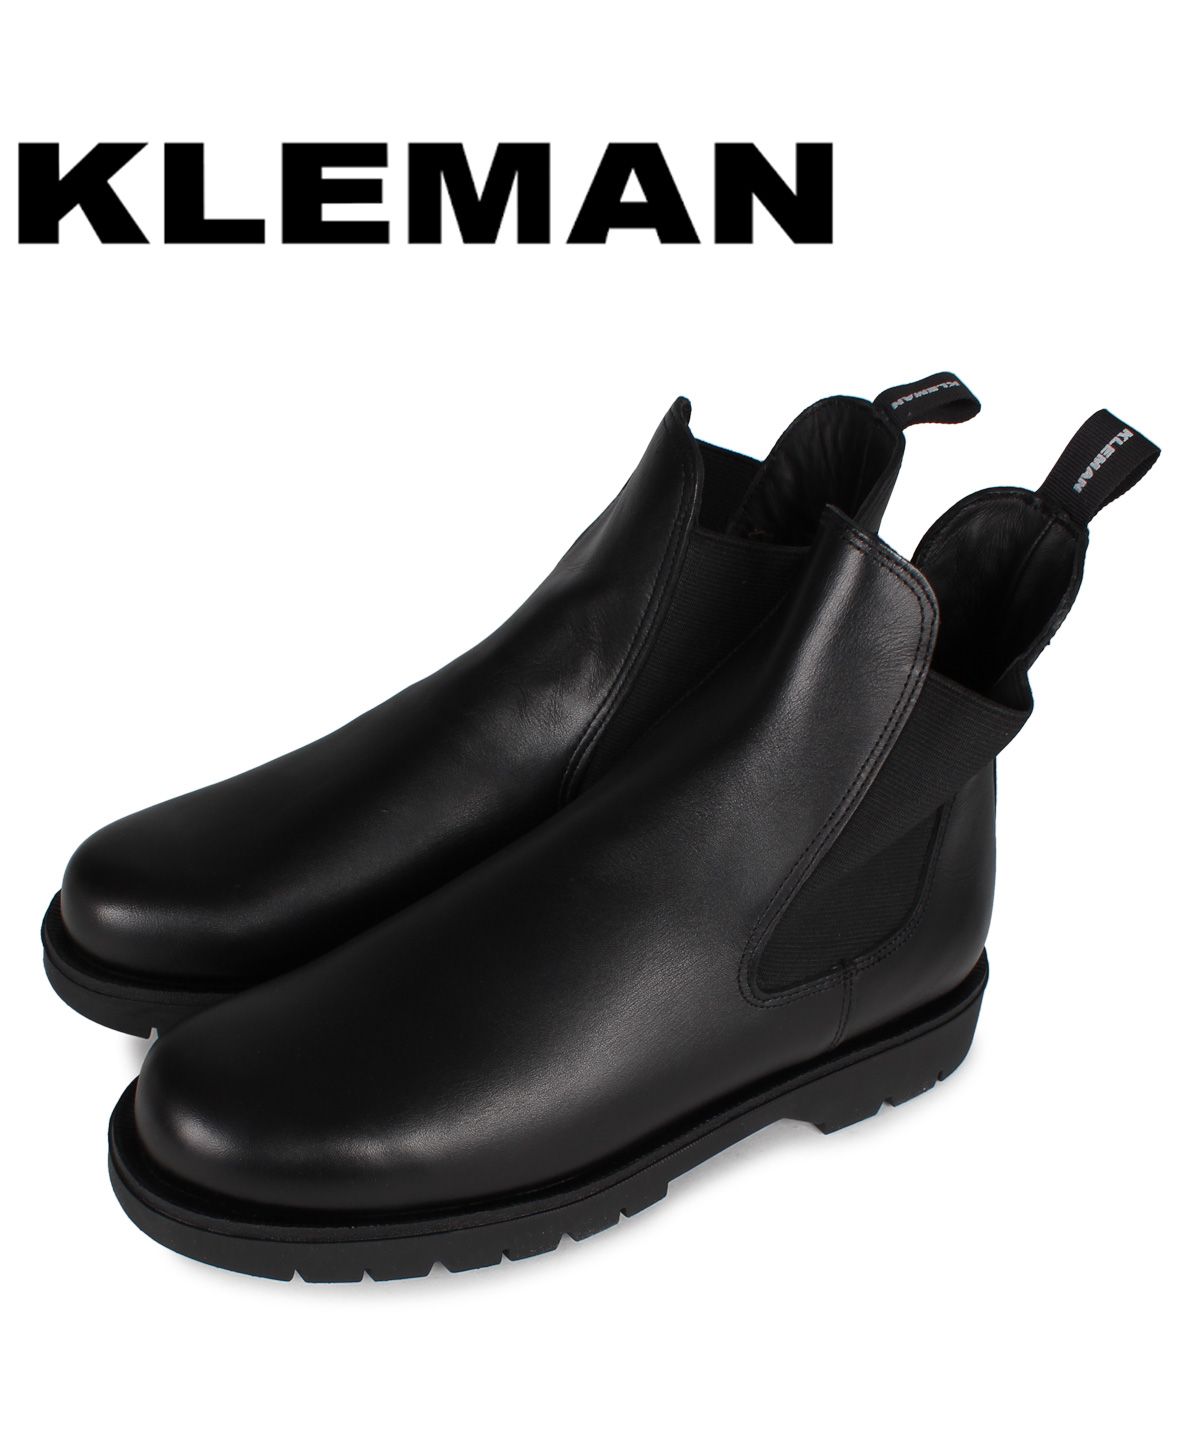 クーポン クレマン Kleman 靴 ブーツ サイドゴアブーツ チェルシー メンズ Tonnant ブラック 黒 クレマン Kleman Magaseek